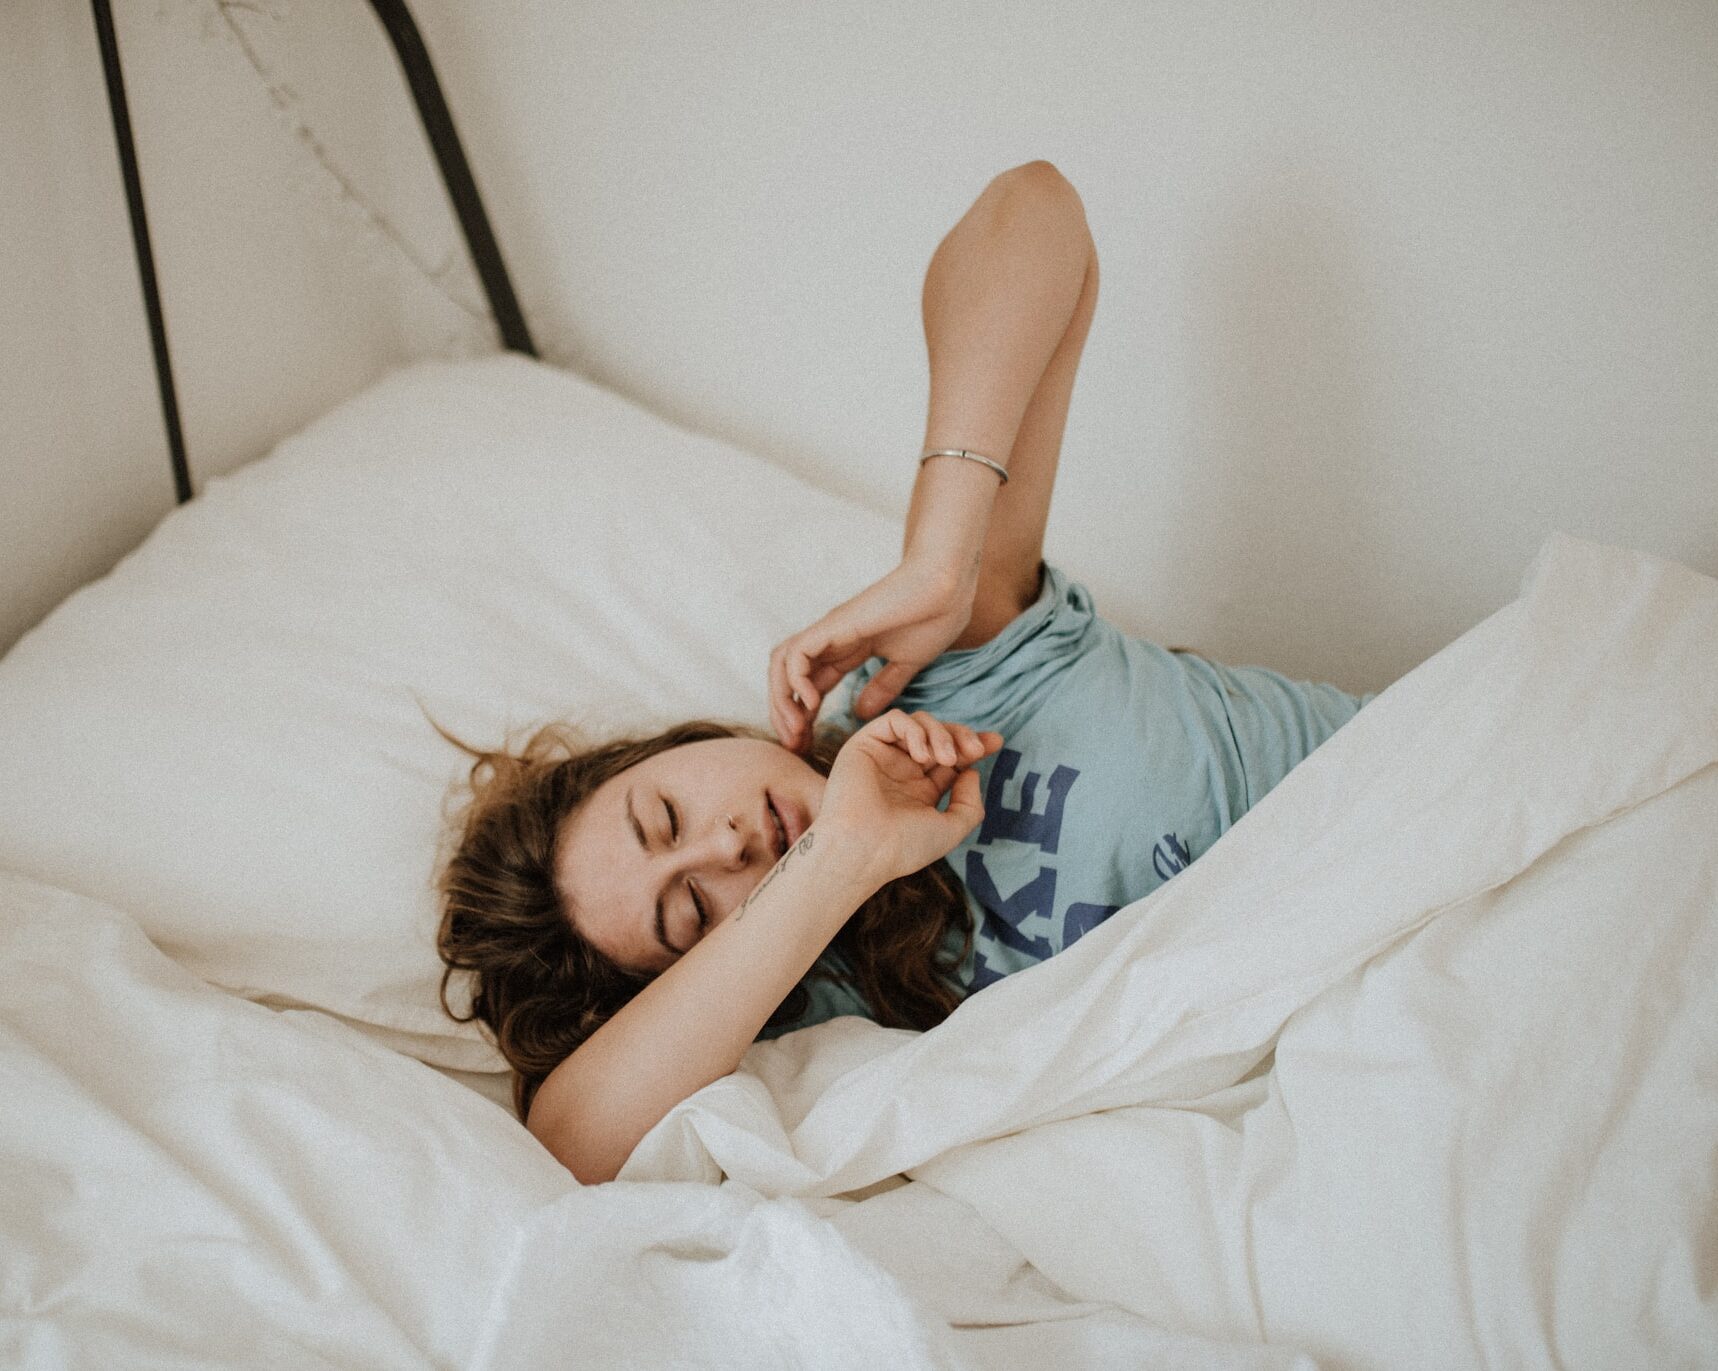 Πώς να ξανακοιμηθείς εύκολα αν ξυπνήσεις μέσα στη νύχτα